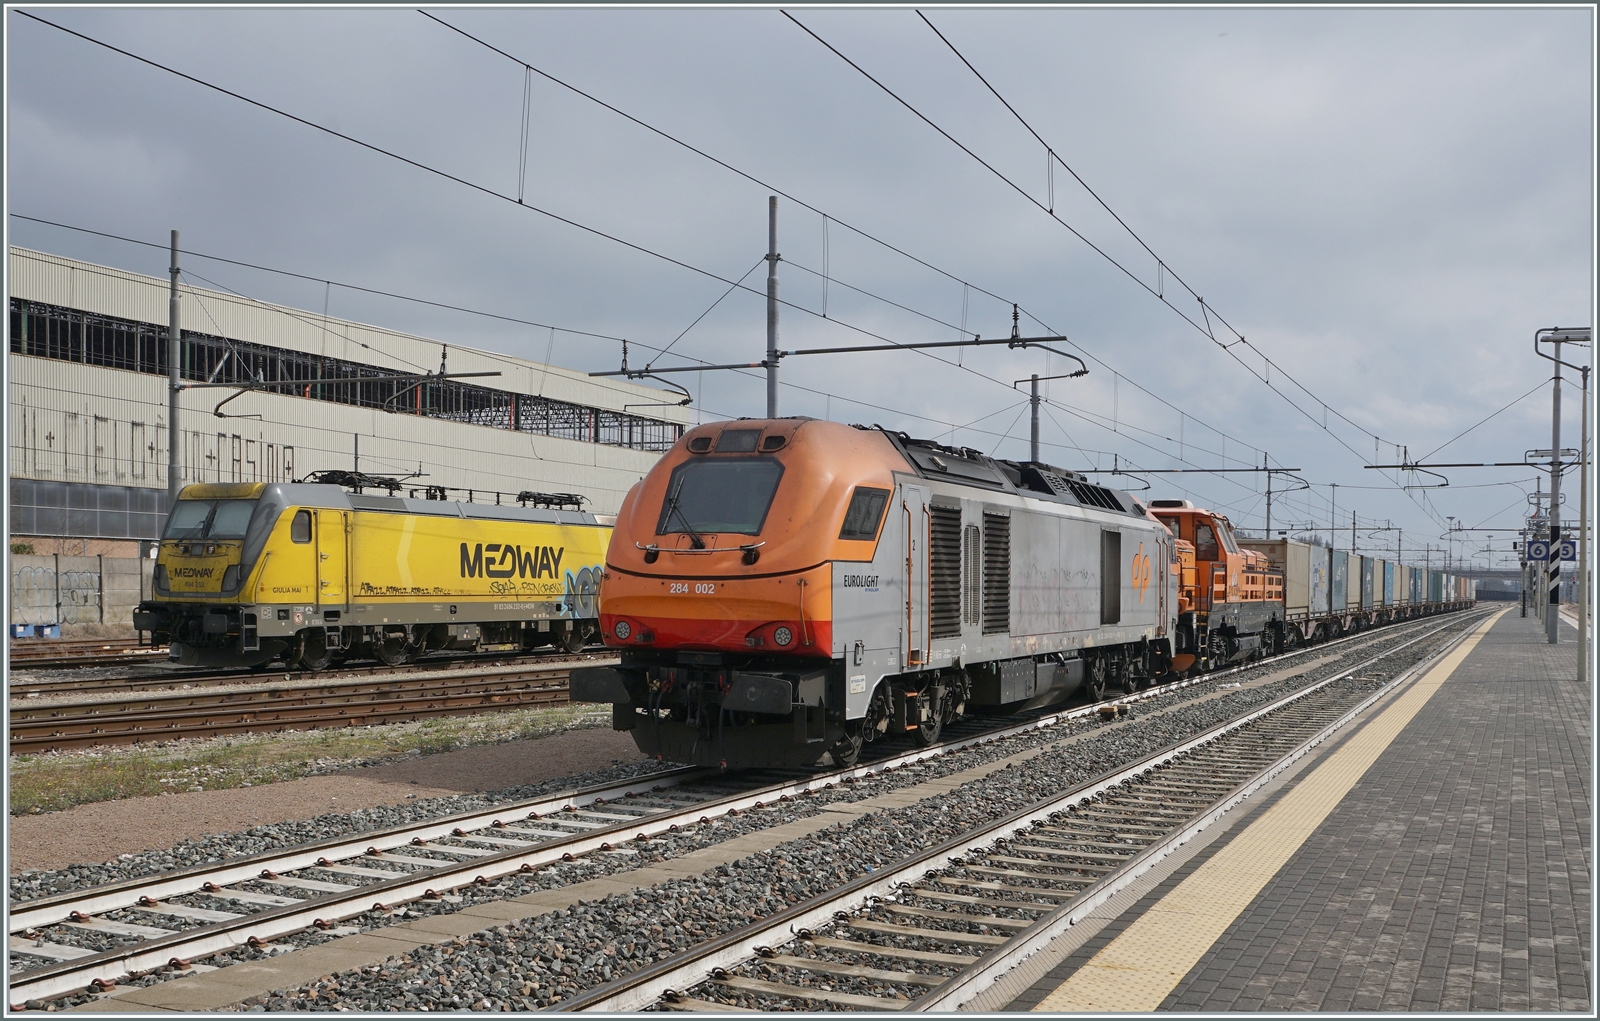 Die Dinazzano Pò (DPO) Eurolight D 284 002 (UIC 92 83 2284 002-8 I-DPO) hat sich in Reggio Emilia mit der D 744 006 (UIC 92 83 2744 006-3 IT-DPO) vor einen Güterzug gesetzt. Beachtenswert in der UIC Bezeichnung, dass die einerseits  I-DPO , andererseits  IT-DPO  verwendet wird. Ebenfalls erwähnenswert: die heutige DPO 284 002 wurde als Euro 4000 2010 in Berlin auf der InnoTrans gezeigt.  

14. März 2023